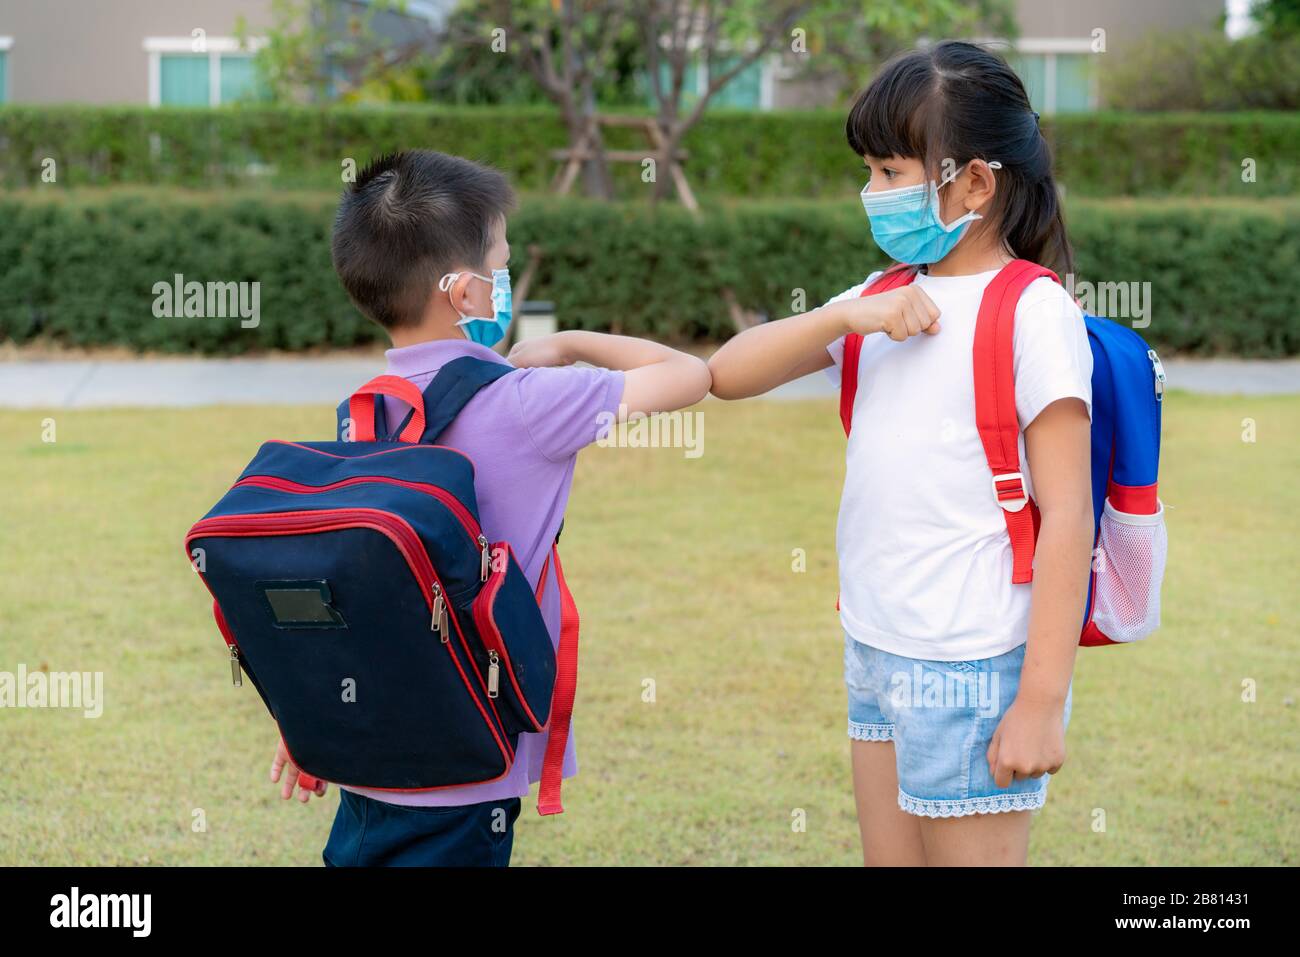 Gomito bump è nuovo saluto per evitare la diffusione di coronavirus. Due bambini asiatici amici prescolare si incontrano nel parco della scuola a mani nude. Estea Foto Stock